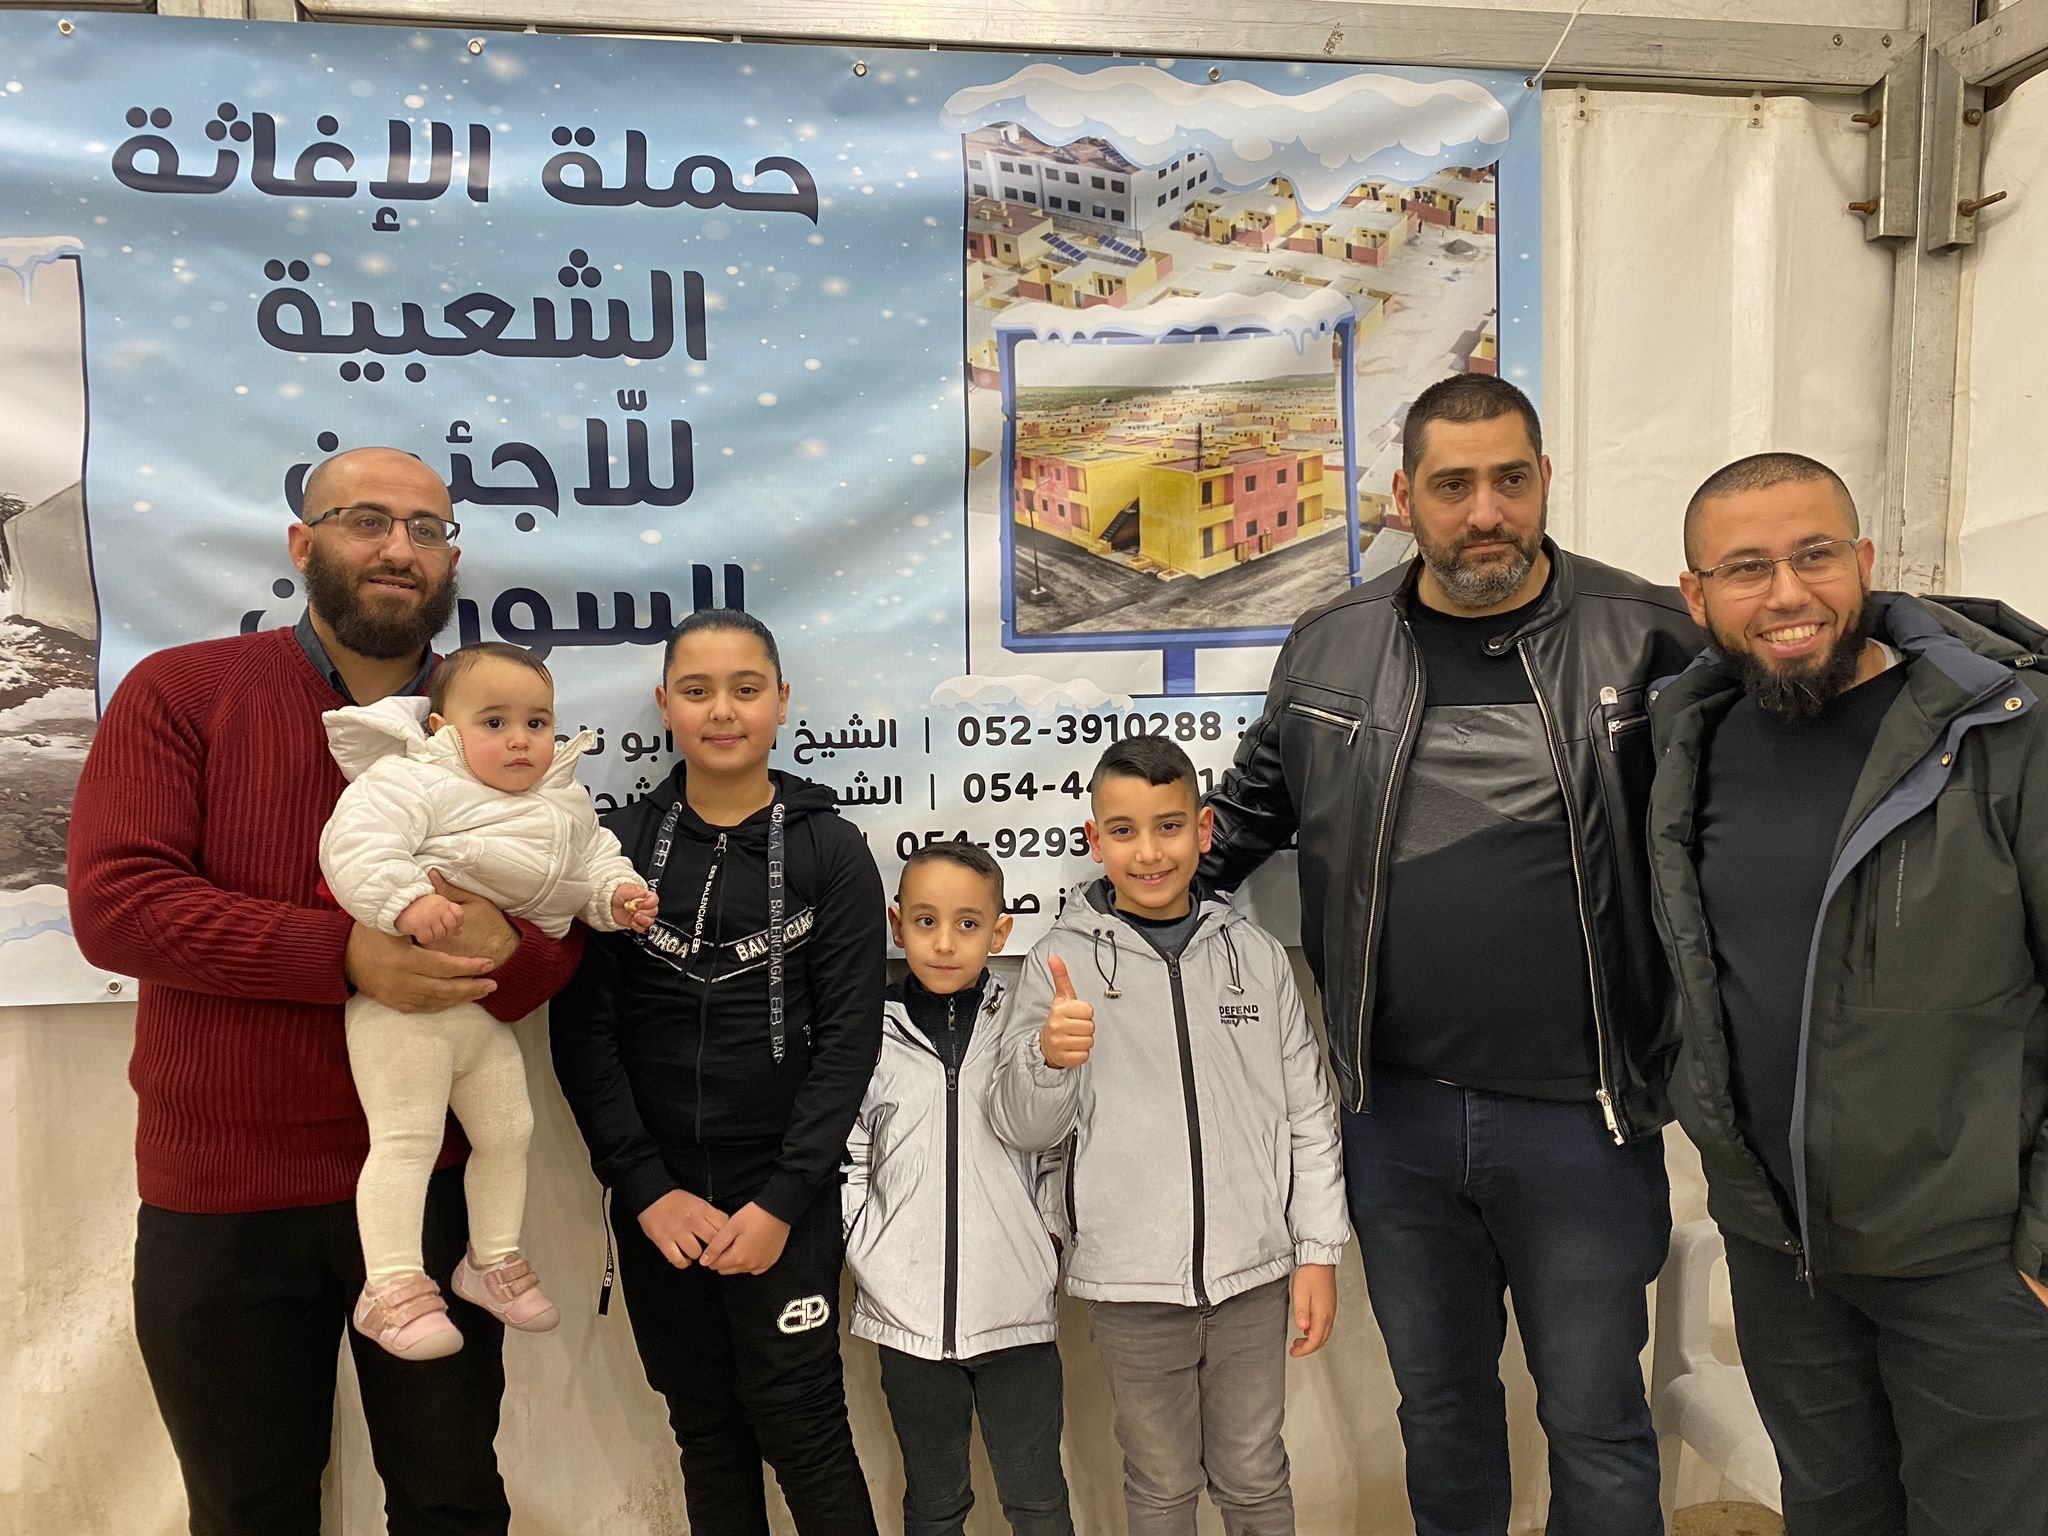 انطلاق الحملة الشعبية لاغاثة اللاجئين السوريين في الناصرة ويافة الناصرة-3